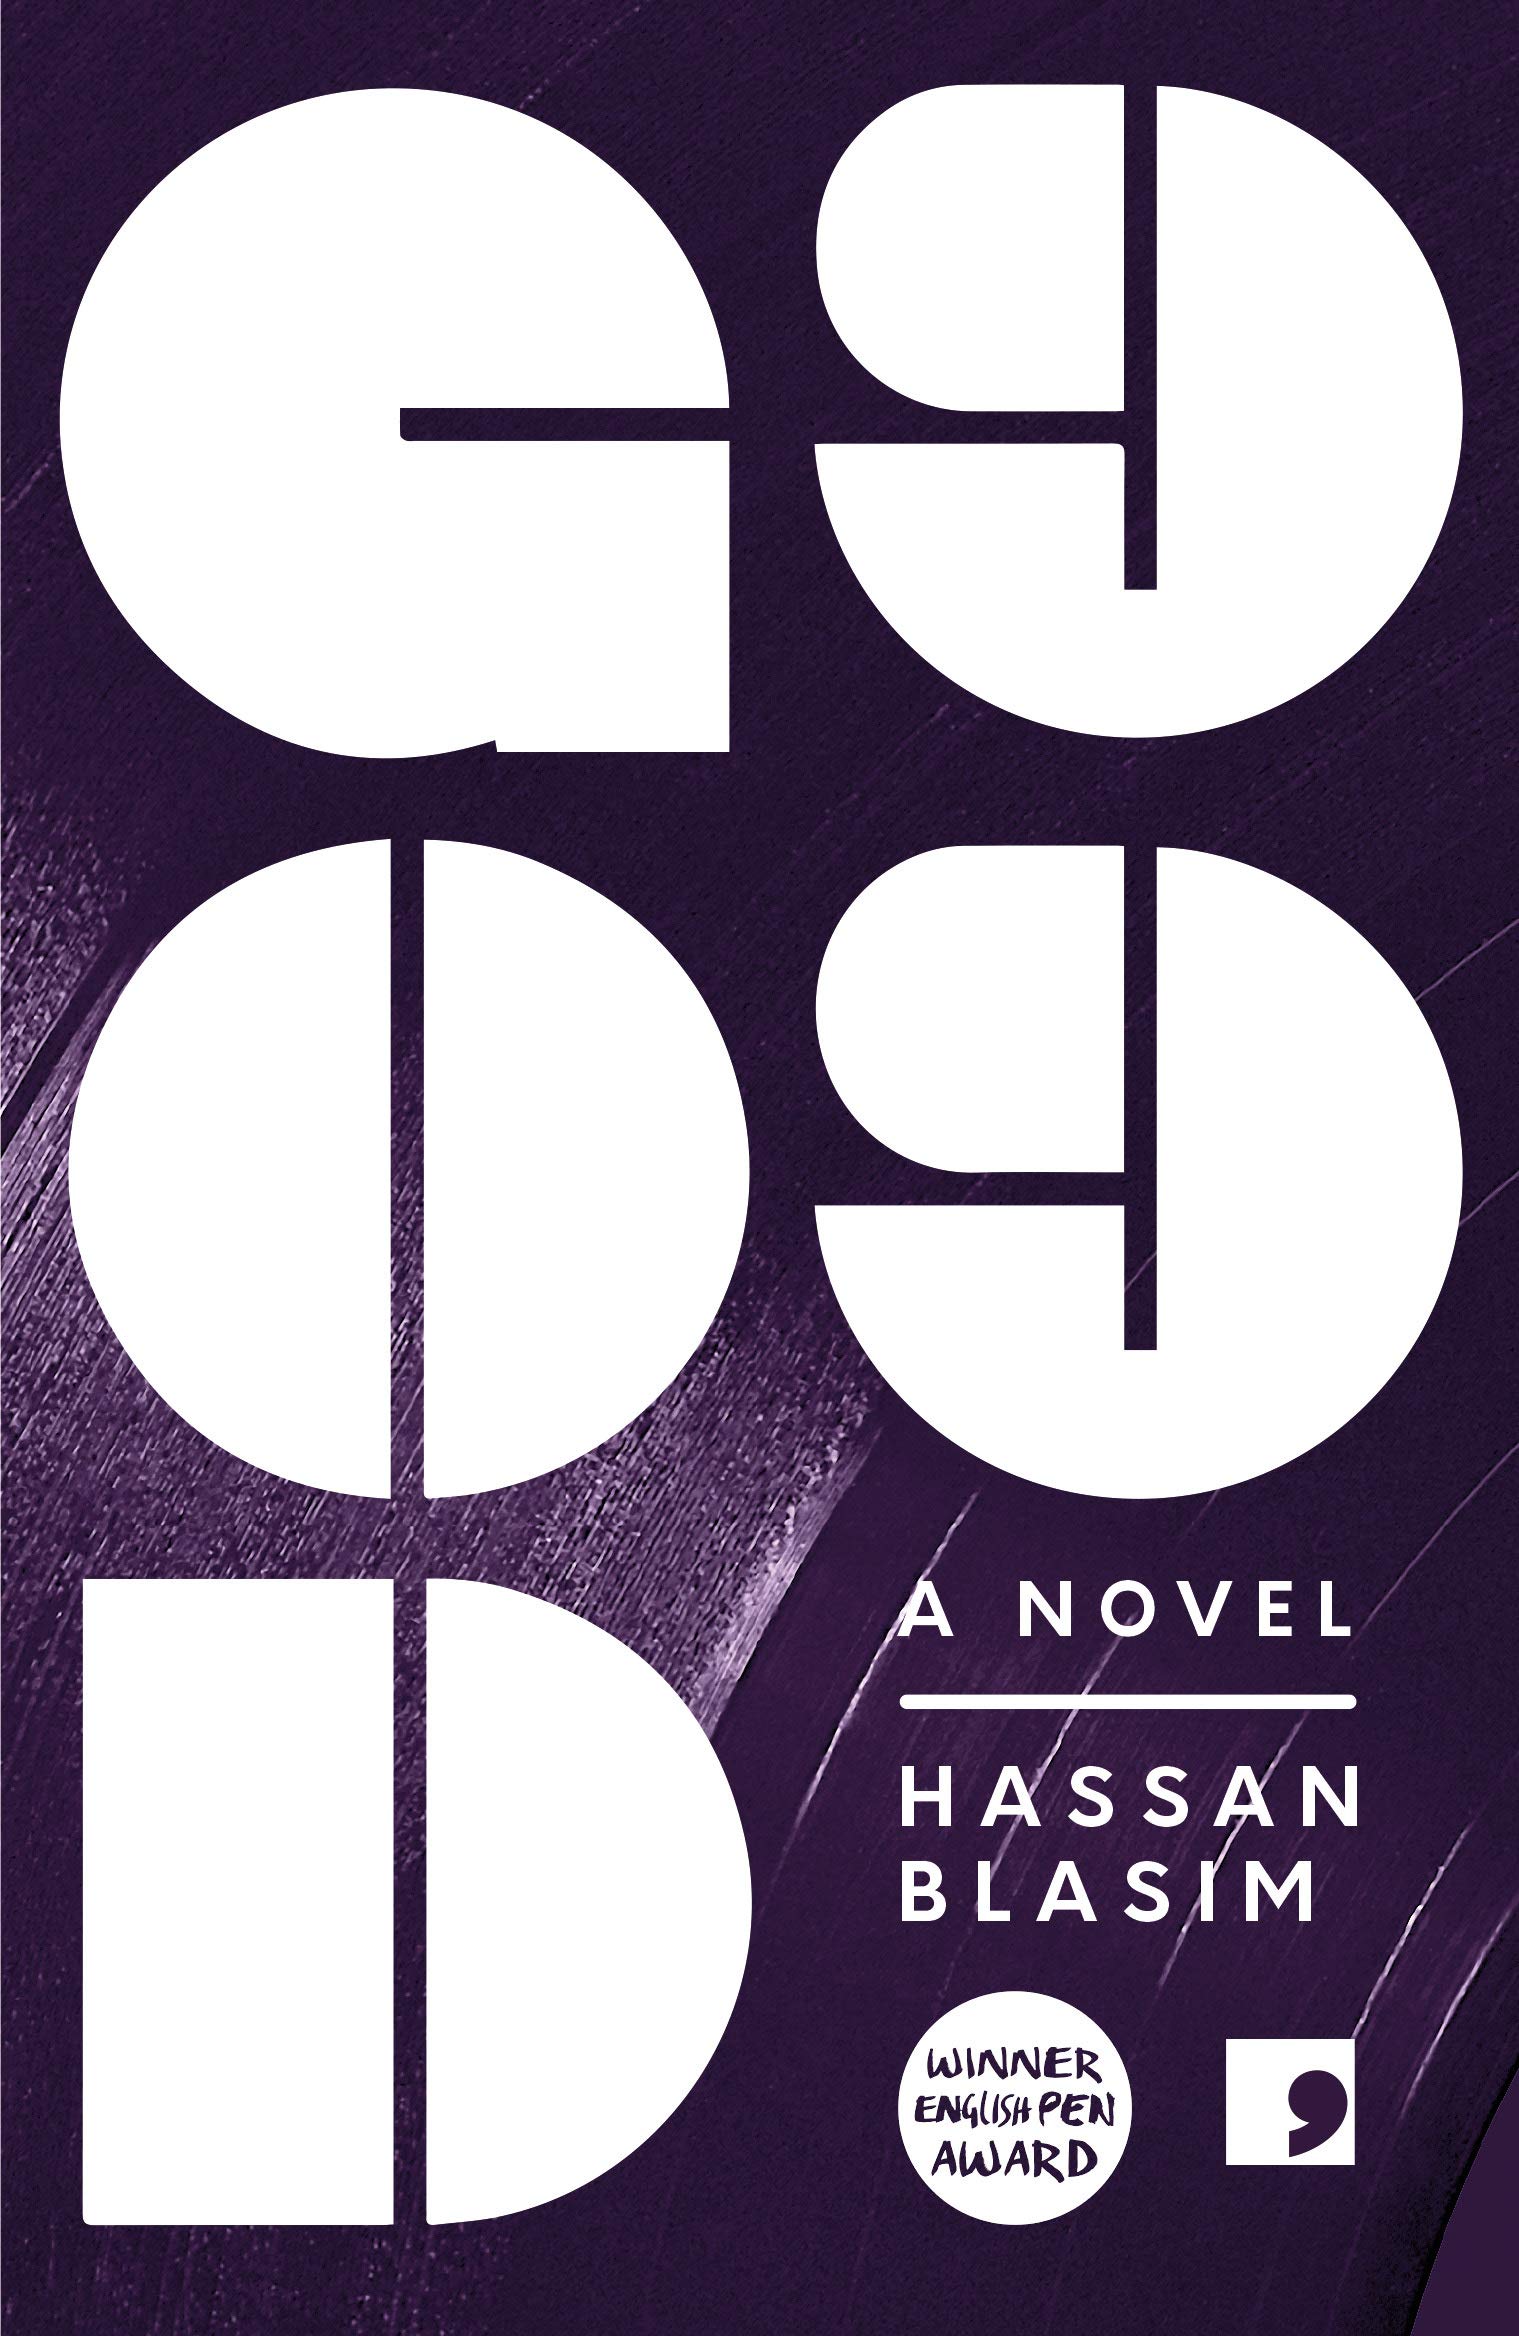 غلاف الترجمة الإنكليزيَّة لرواية حسن بلاسِم "الله 99" (دار النشر: كوما پريس)  (published by Comma Press)